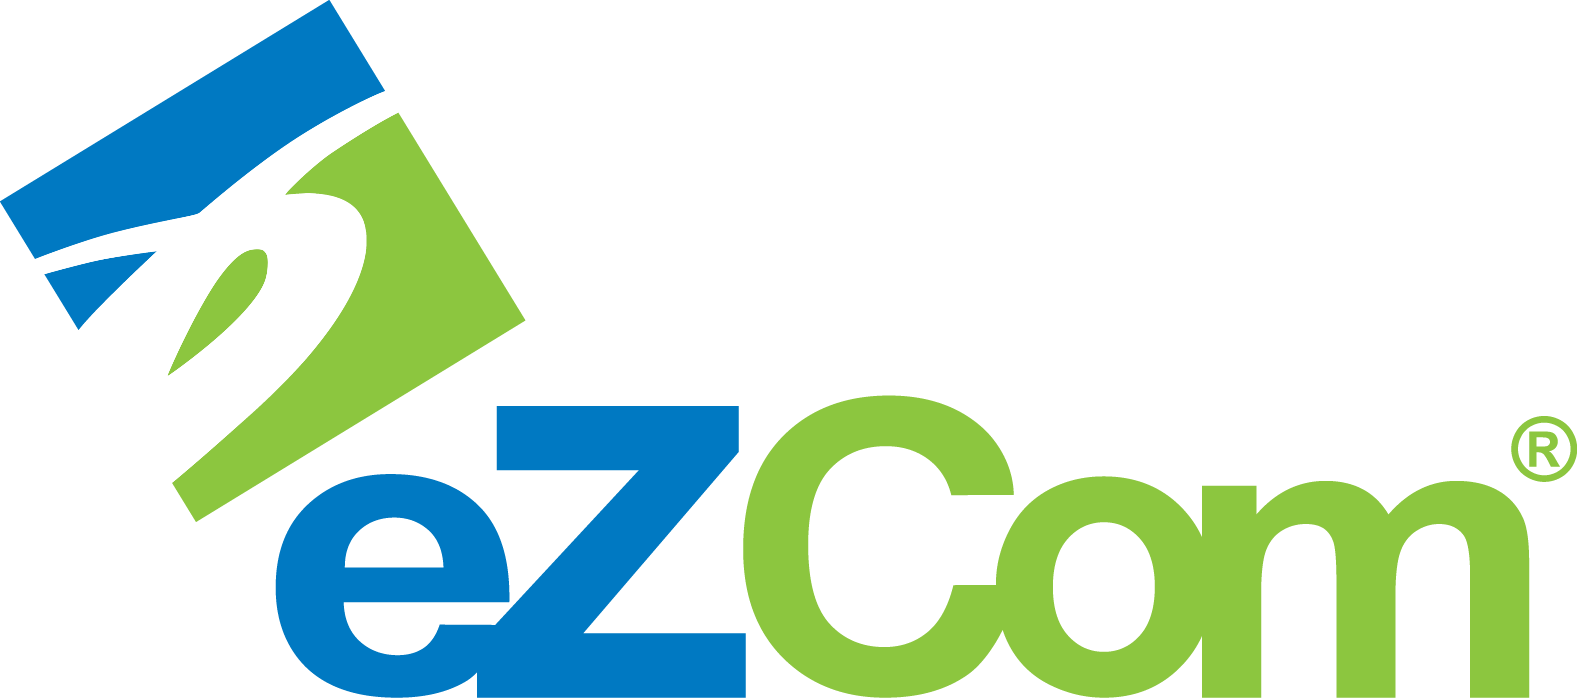 eZCom Software Logo